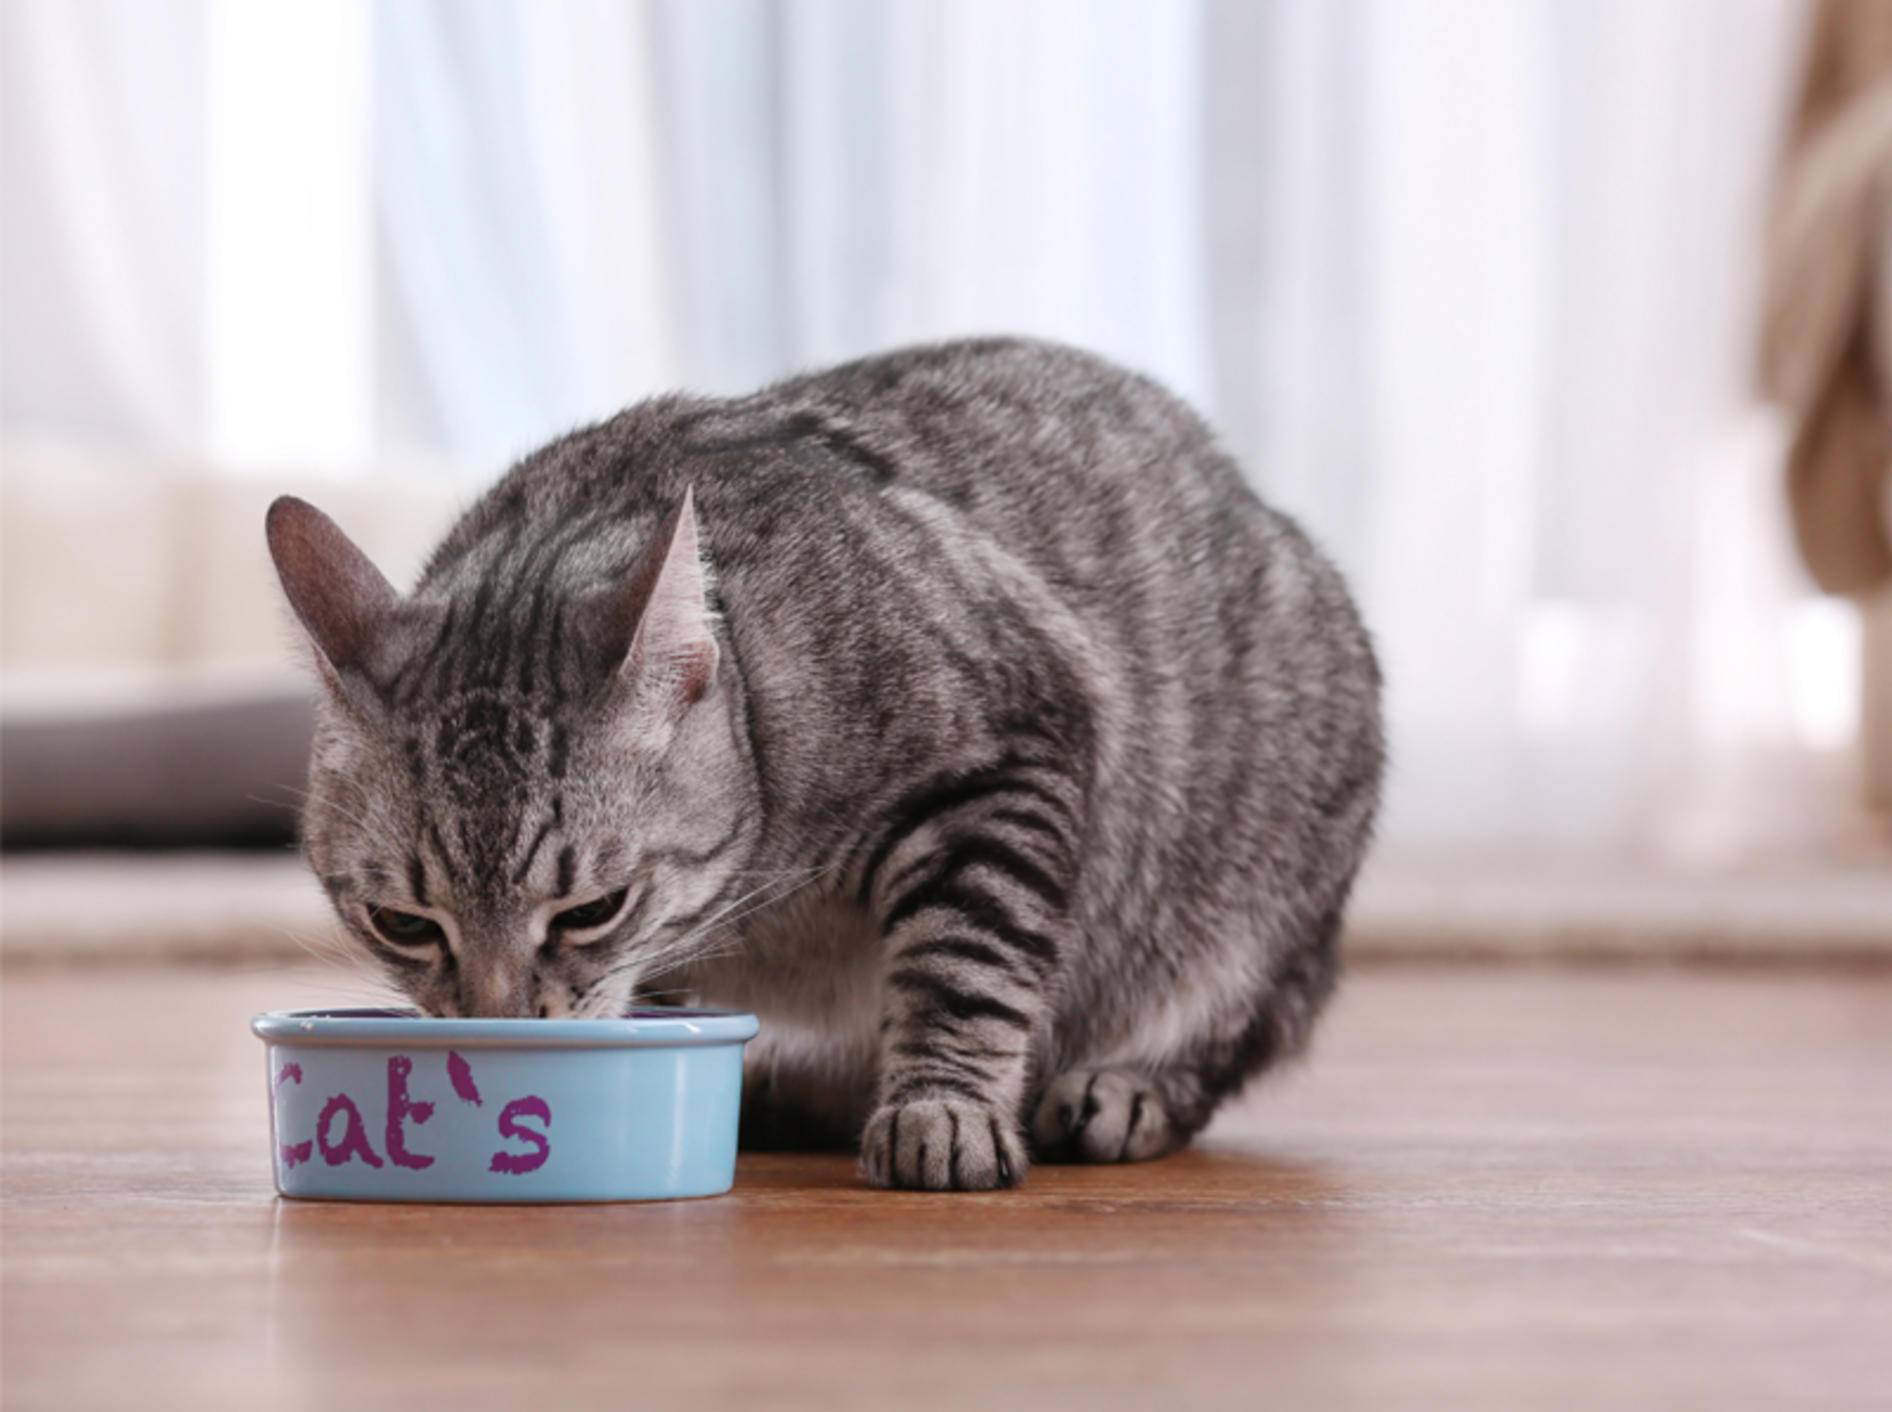 Ist Reis gut für Katzen? - Bild: Shutterstock / Africa Studio